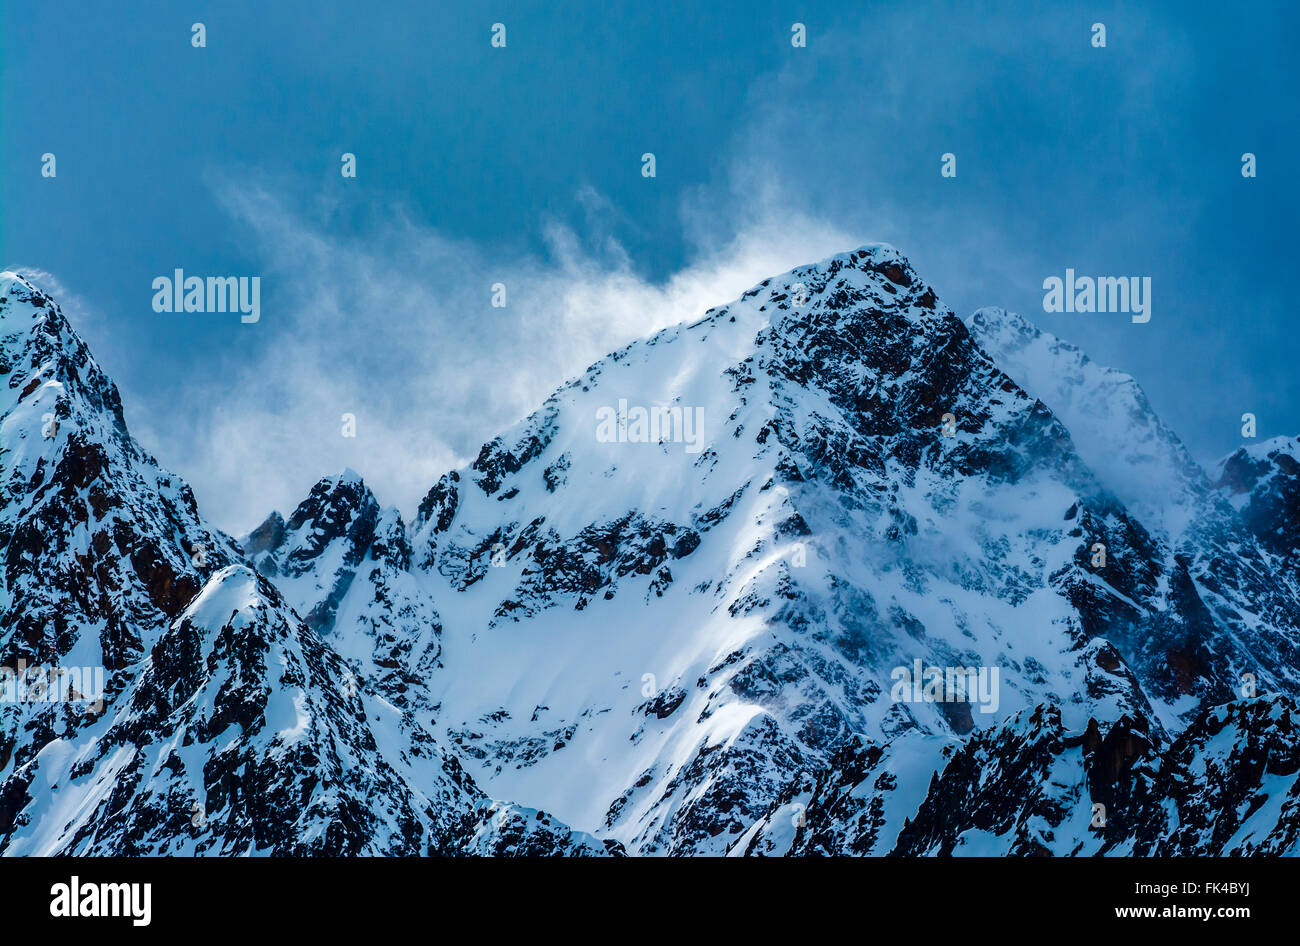 Neve di vorticazione catturati nella luce su un burrascoso mountain top in Austria. Foto Stock